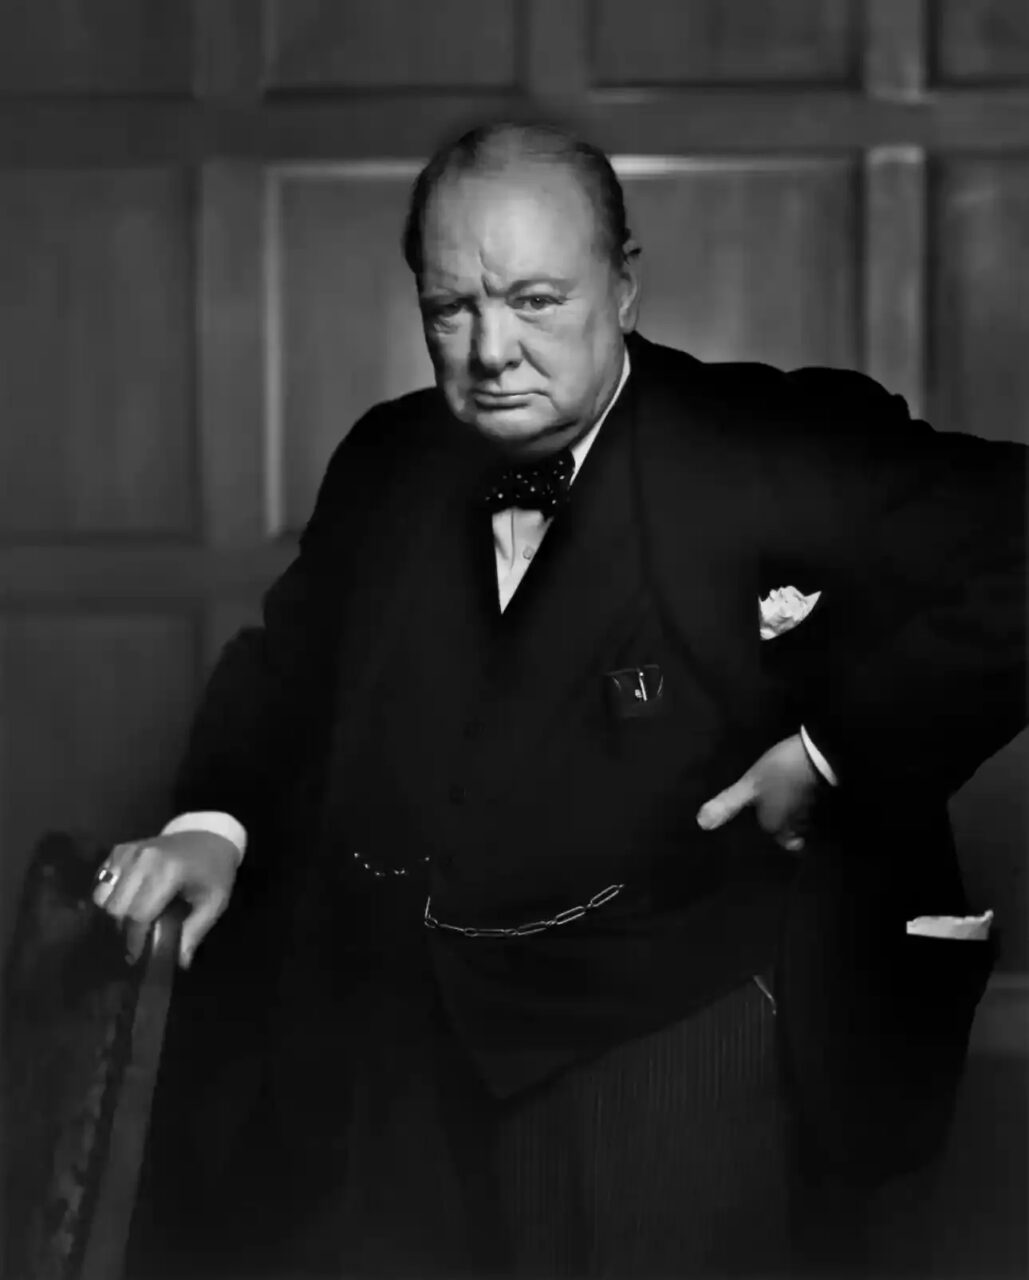 Roban el famoso retrato de Churchill de un hotel y lo sustituyen por uno falso